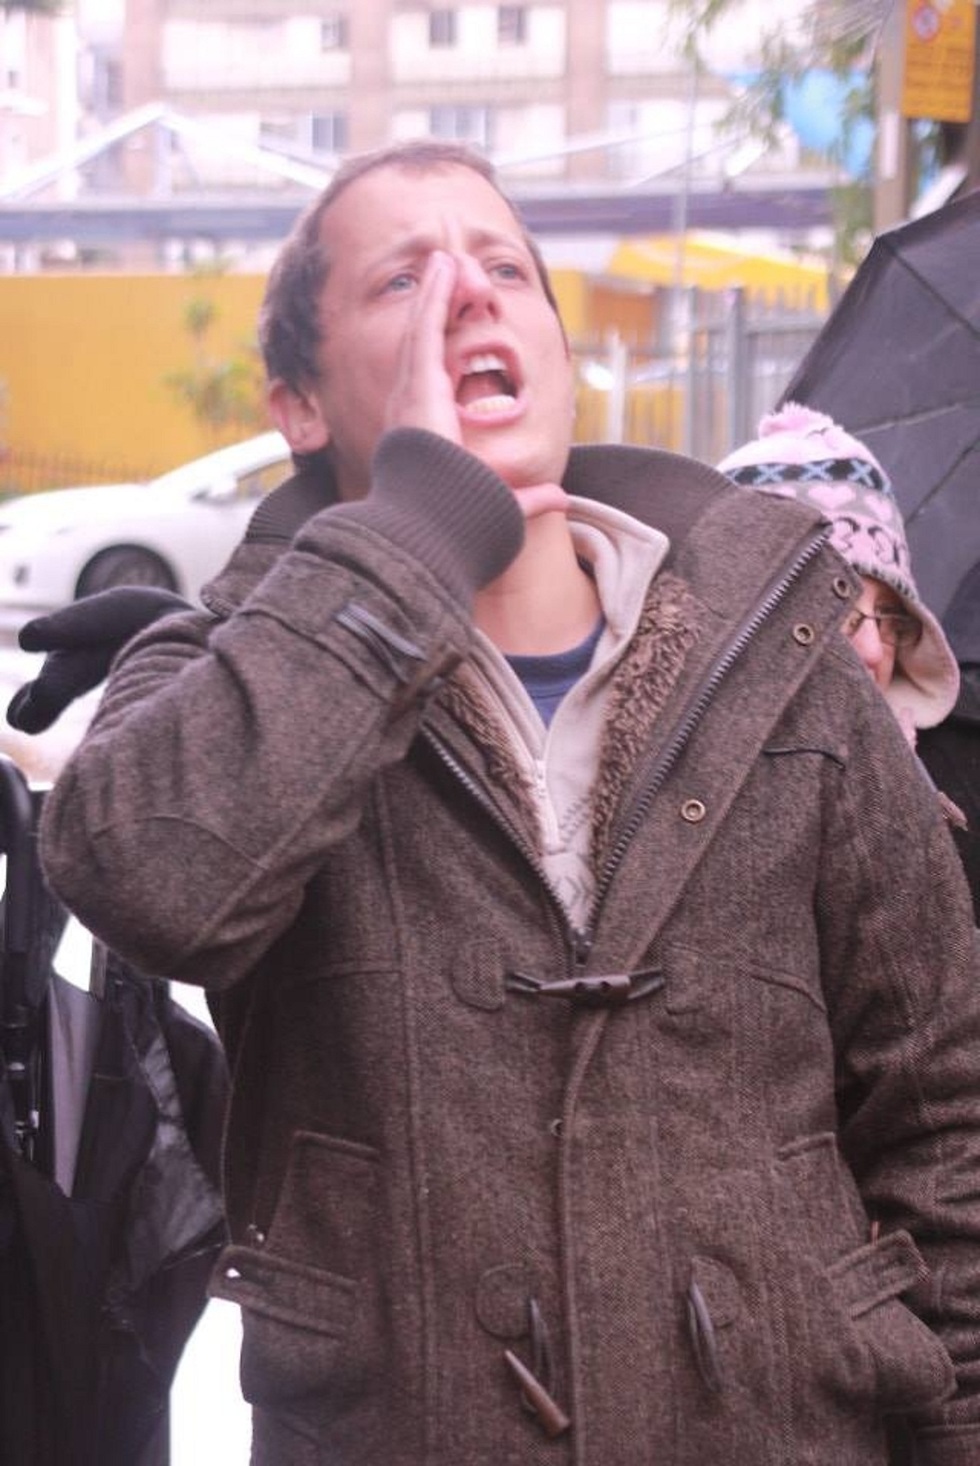 אלעד הוכמן צועק בהפגנה ()